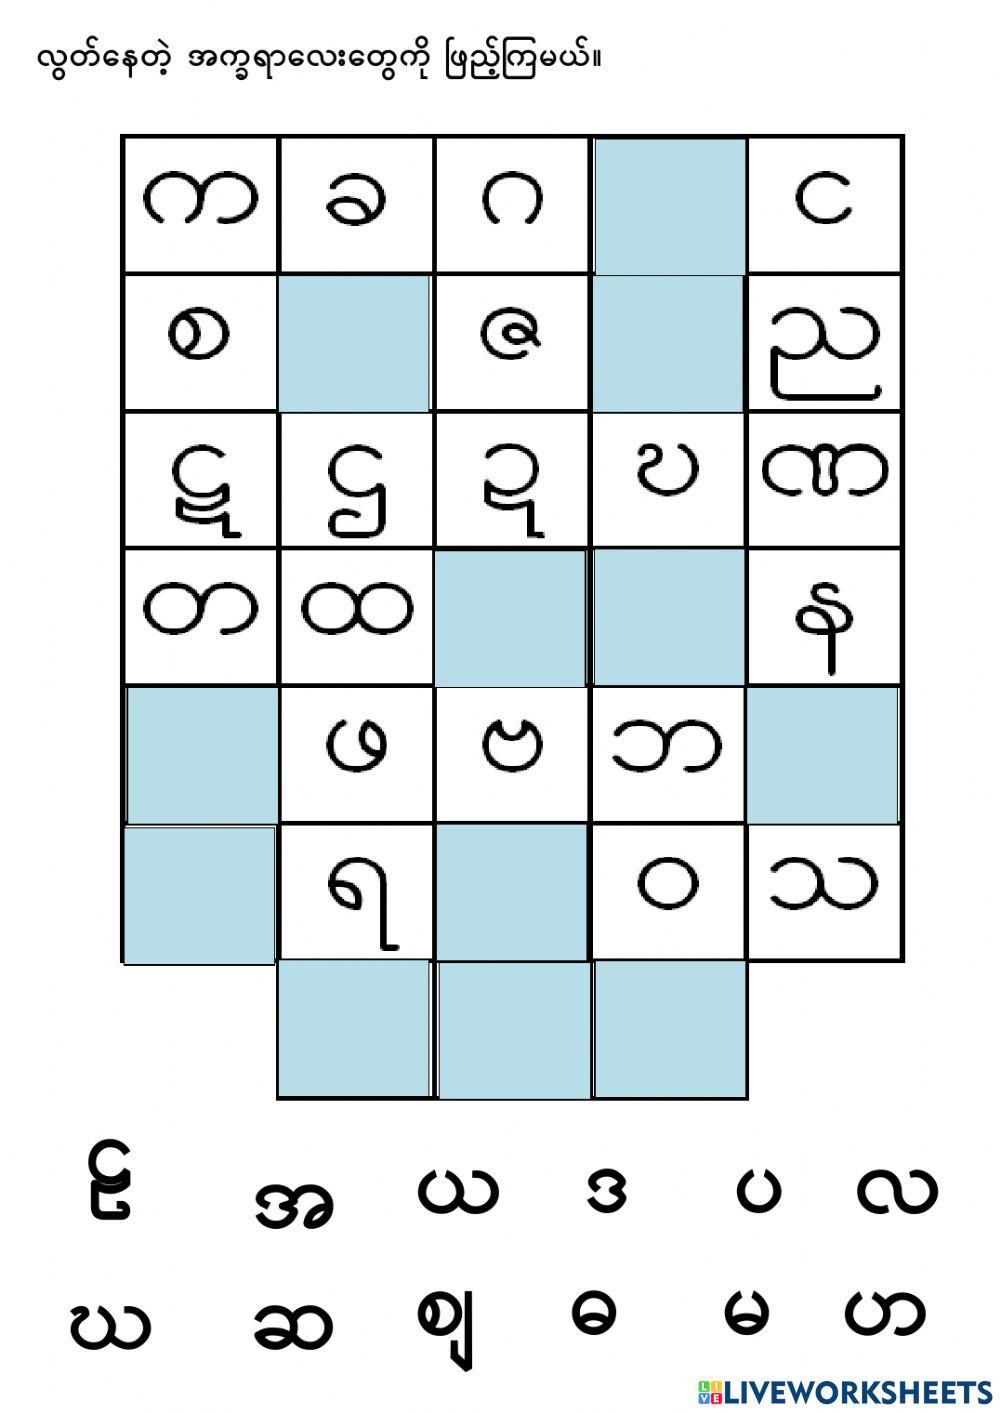 Burmese alphabet